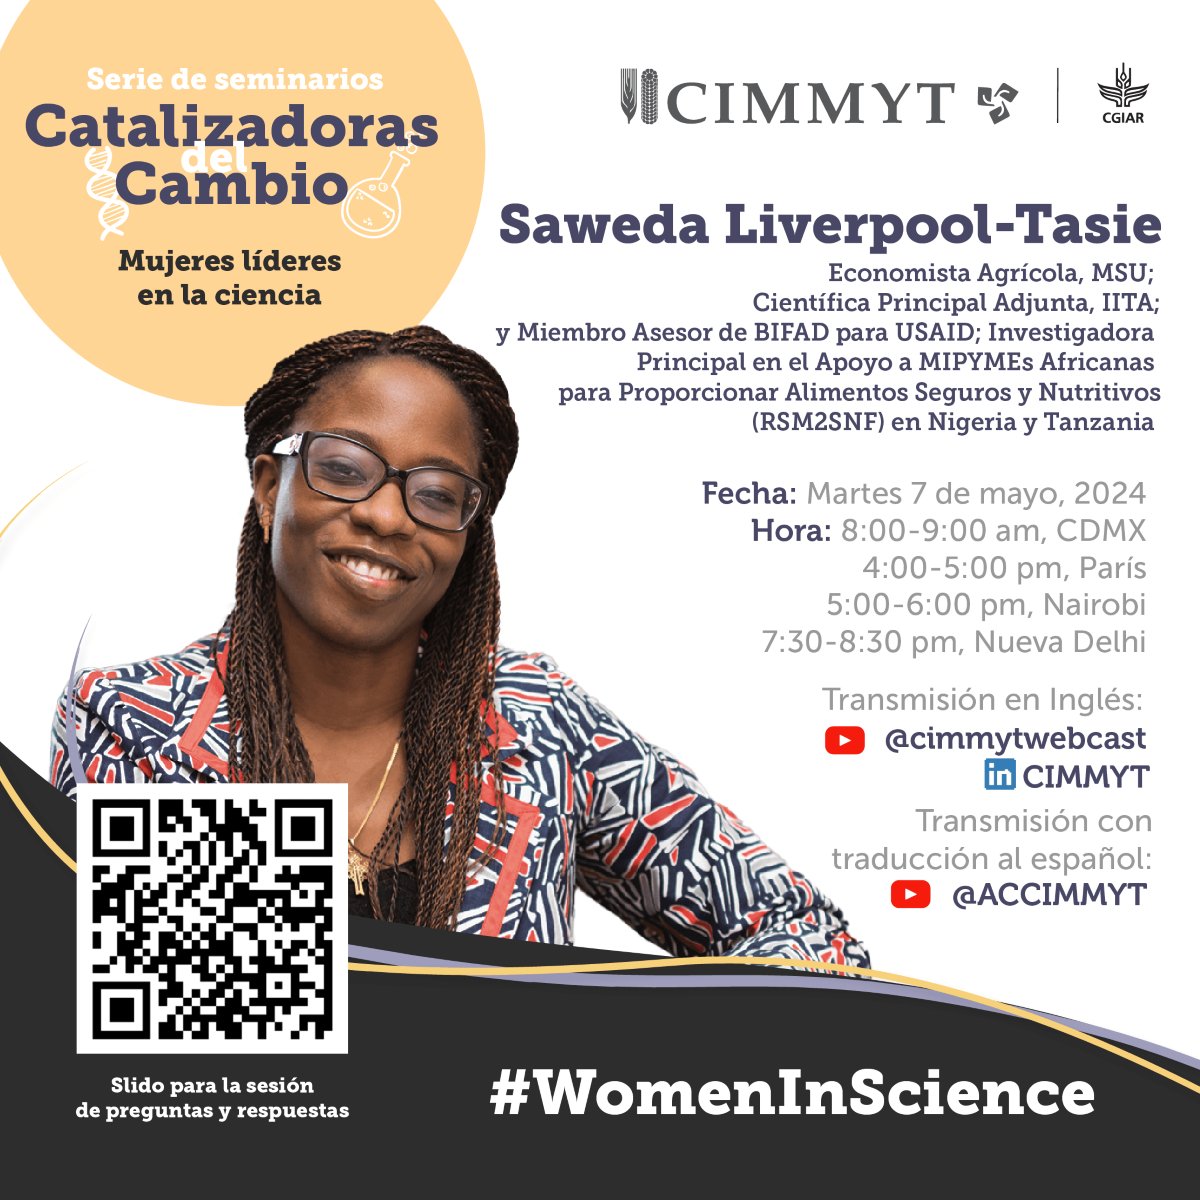 🌟 Conéctate con #CIMMYT en nuestro evento #MujeresEnCiencia con la destacada Saweda Liverpool-Tasie. 📅 7 de mayo de 2024 ¡Impulsemos el cambio juntos! 💪 #MujeresEmpoderadas #LiderazgoFemenino #STEMMujeres bit.ly/41MS0a9